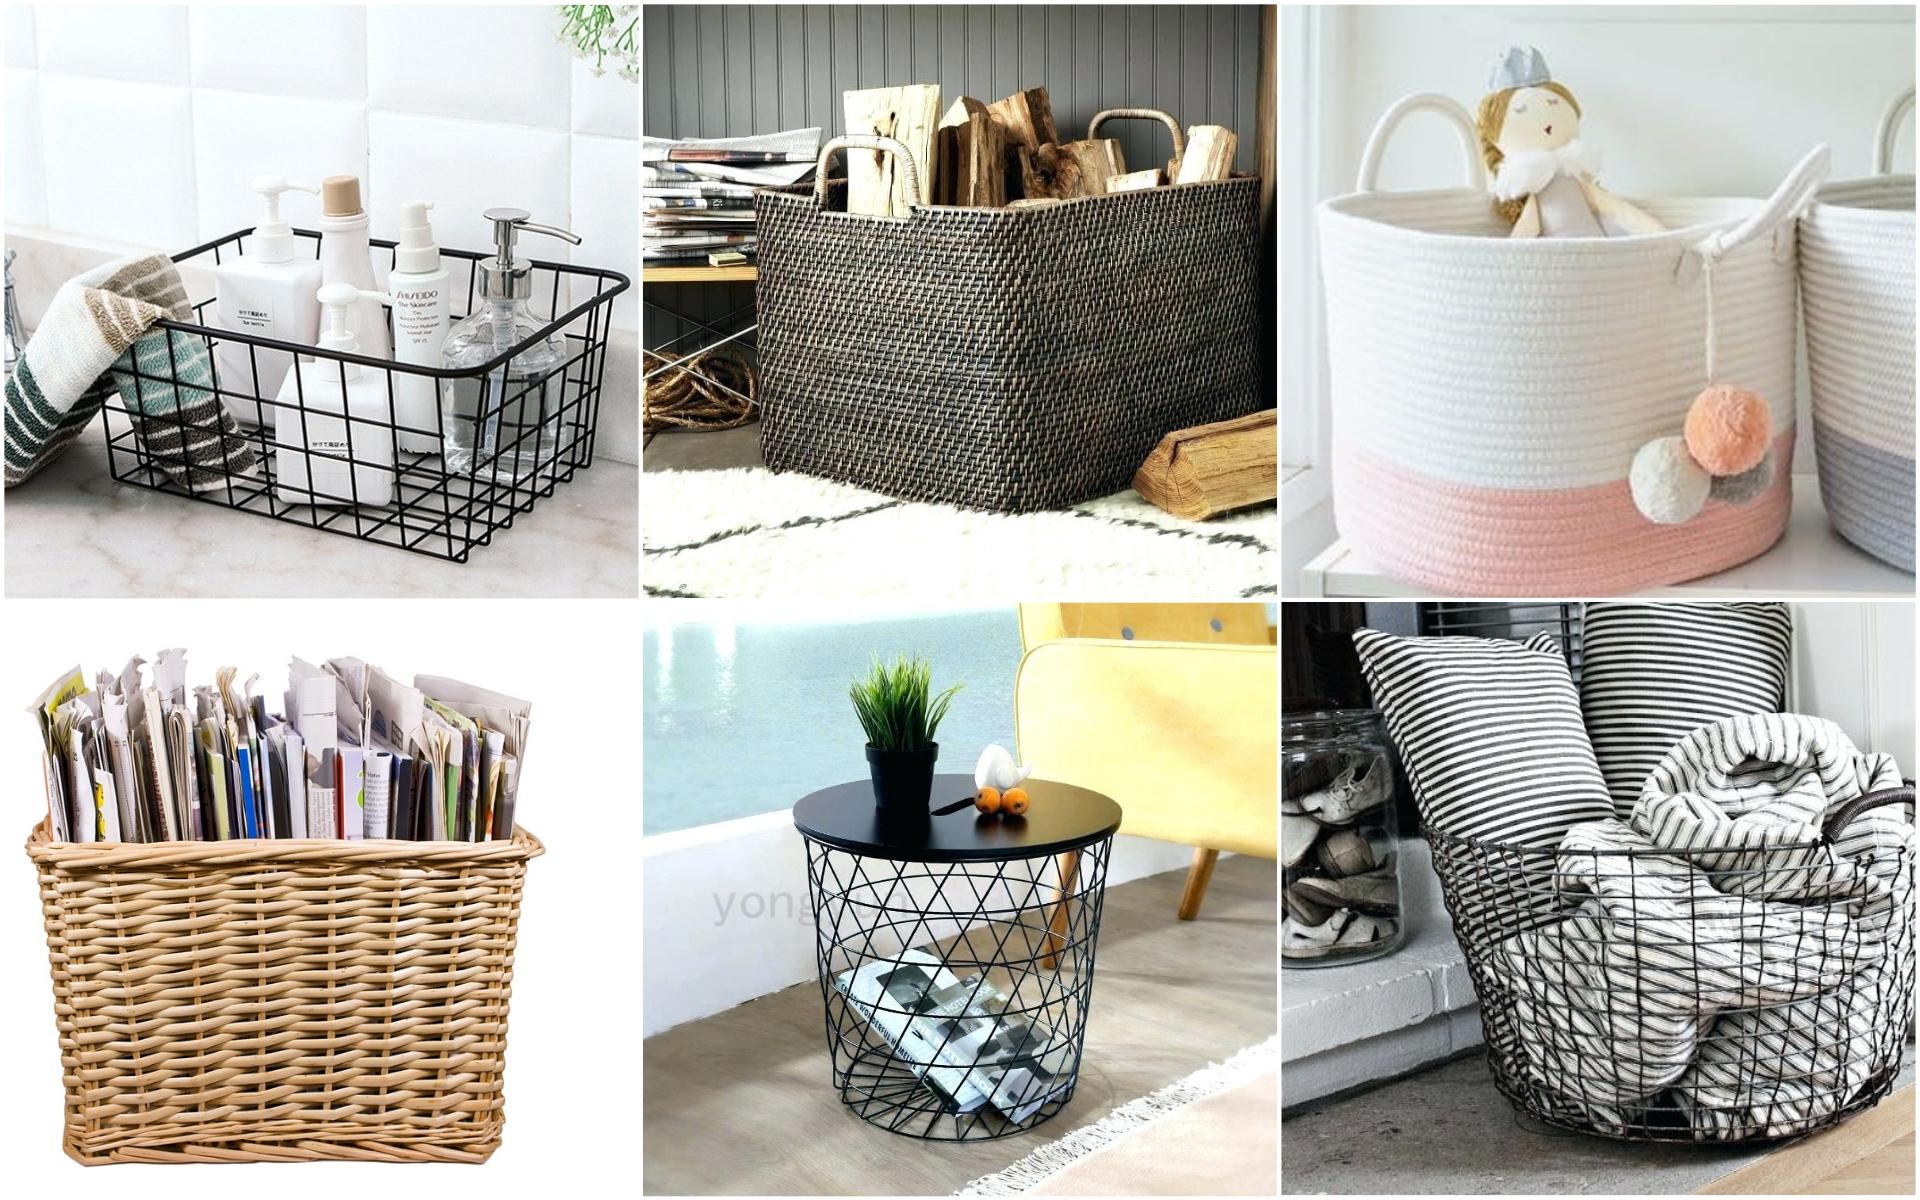 kitchen wall basket storage